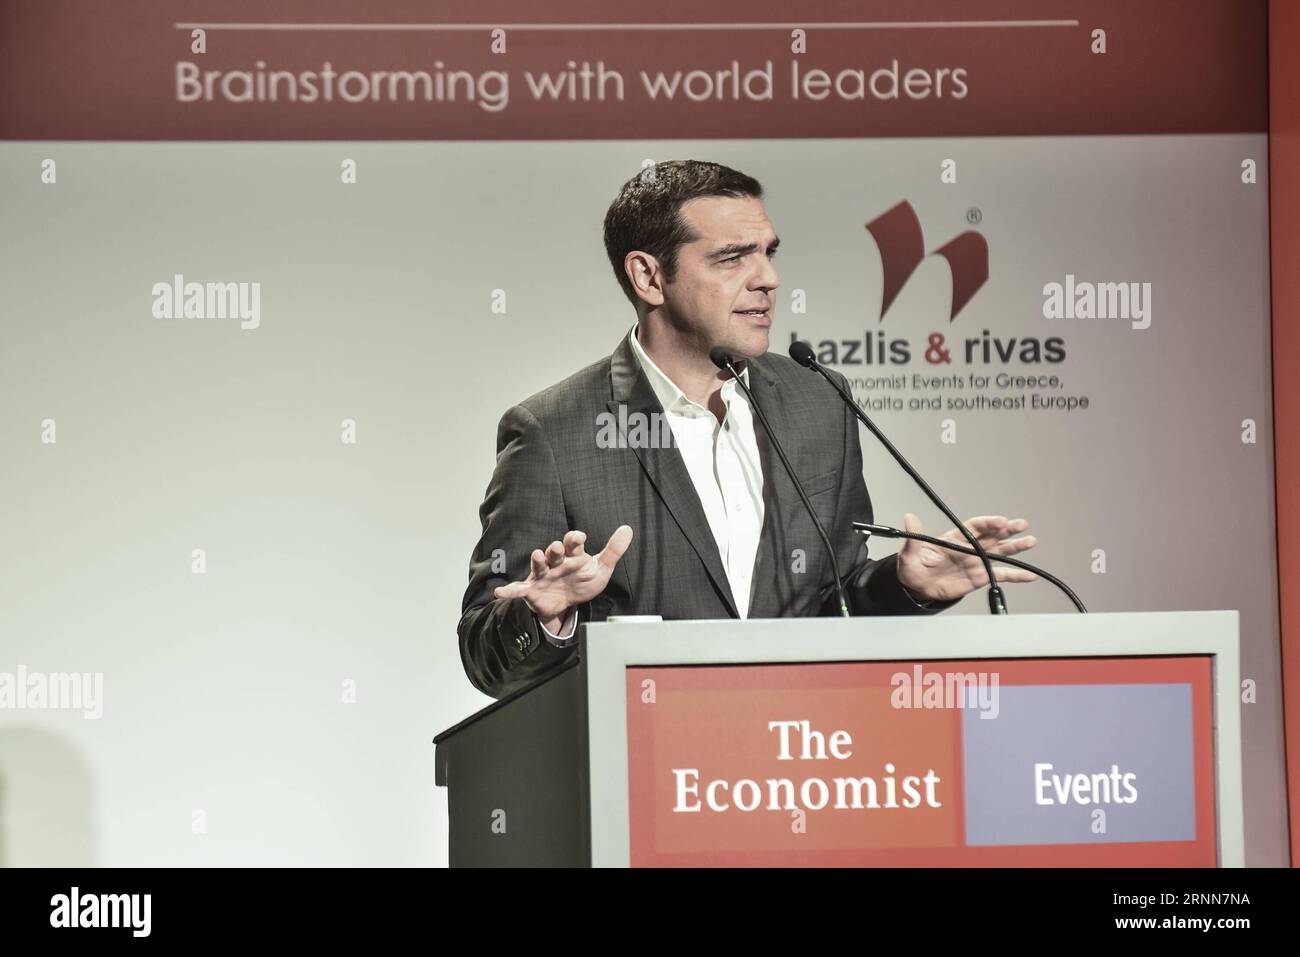 (170629) -- ATENE, 29 giugno 2017 -- il primo ministro greco Alexis Tsipras tiene un discorso in un forum economico ad Atene, Grecia, il 29 giugno 2017. La Grecia sta gradualmente districandosi dalla recessione cronica e crea le condizioni per tornare alla normalità con passi solidi, Alexis Tsipras ha detto giovedì mentre si rivolge a un forum economico ad Atene. ) GRECIA-ATENE-PM-ECONOMIC FORUM MariosxLolos PUBLICATIONxNOTxINxCHN Atene giugno 29 2017 il primo ministro greco Alexis Tsipras tiene un discorso AL Forum economico di Atene Grecia IL 29 2017 giugno la Grecia SI STA gradualmente districando dalla recessione cronica Foto Stock